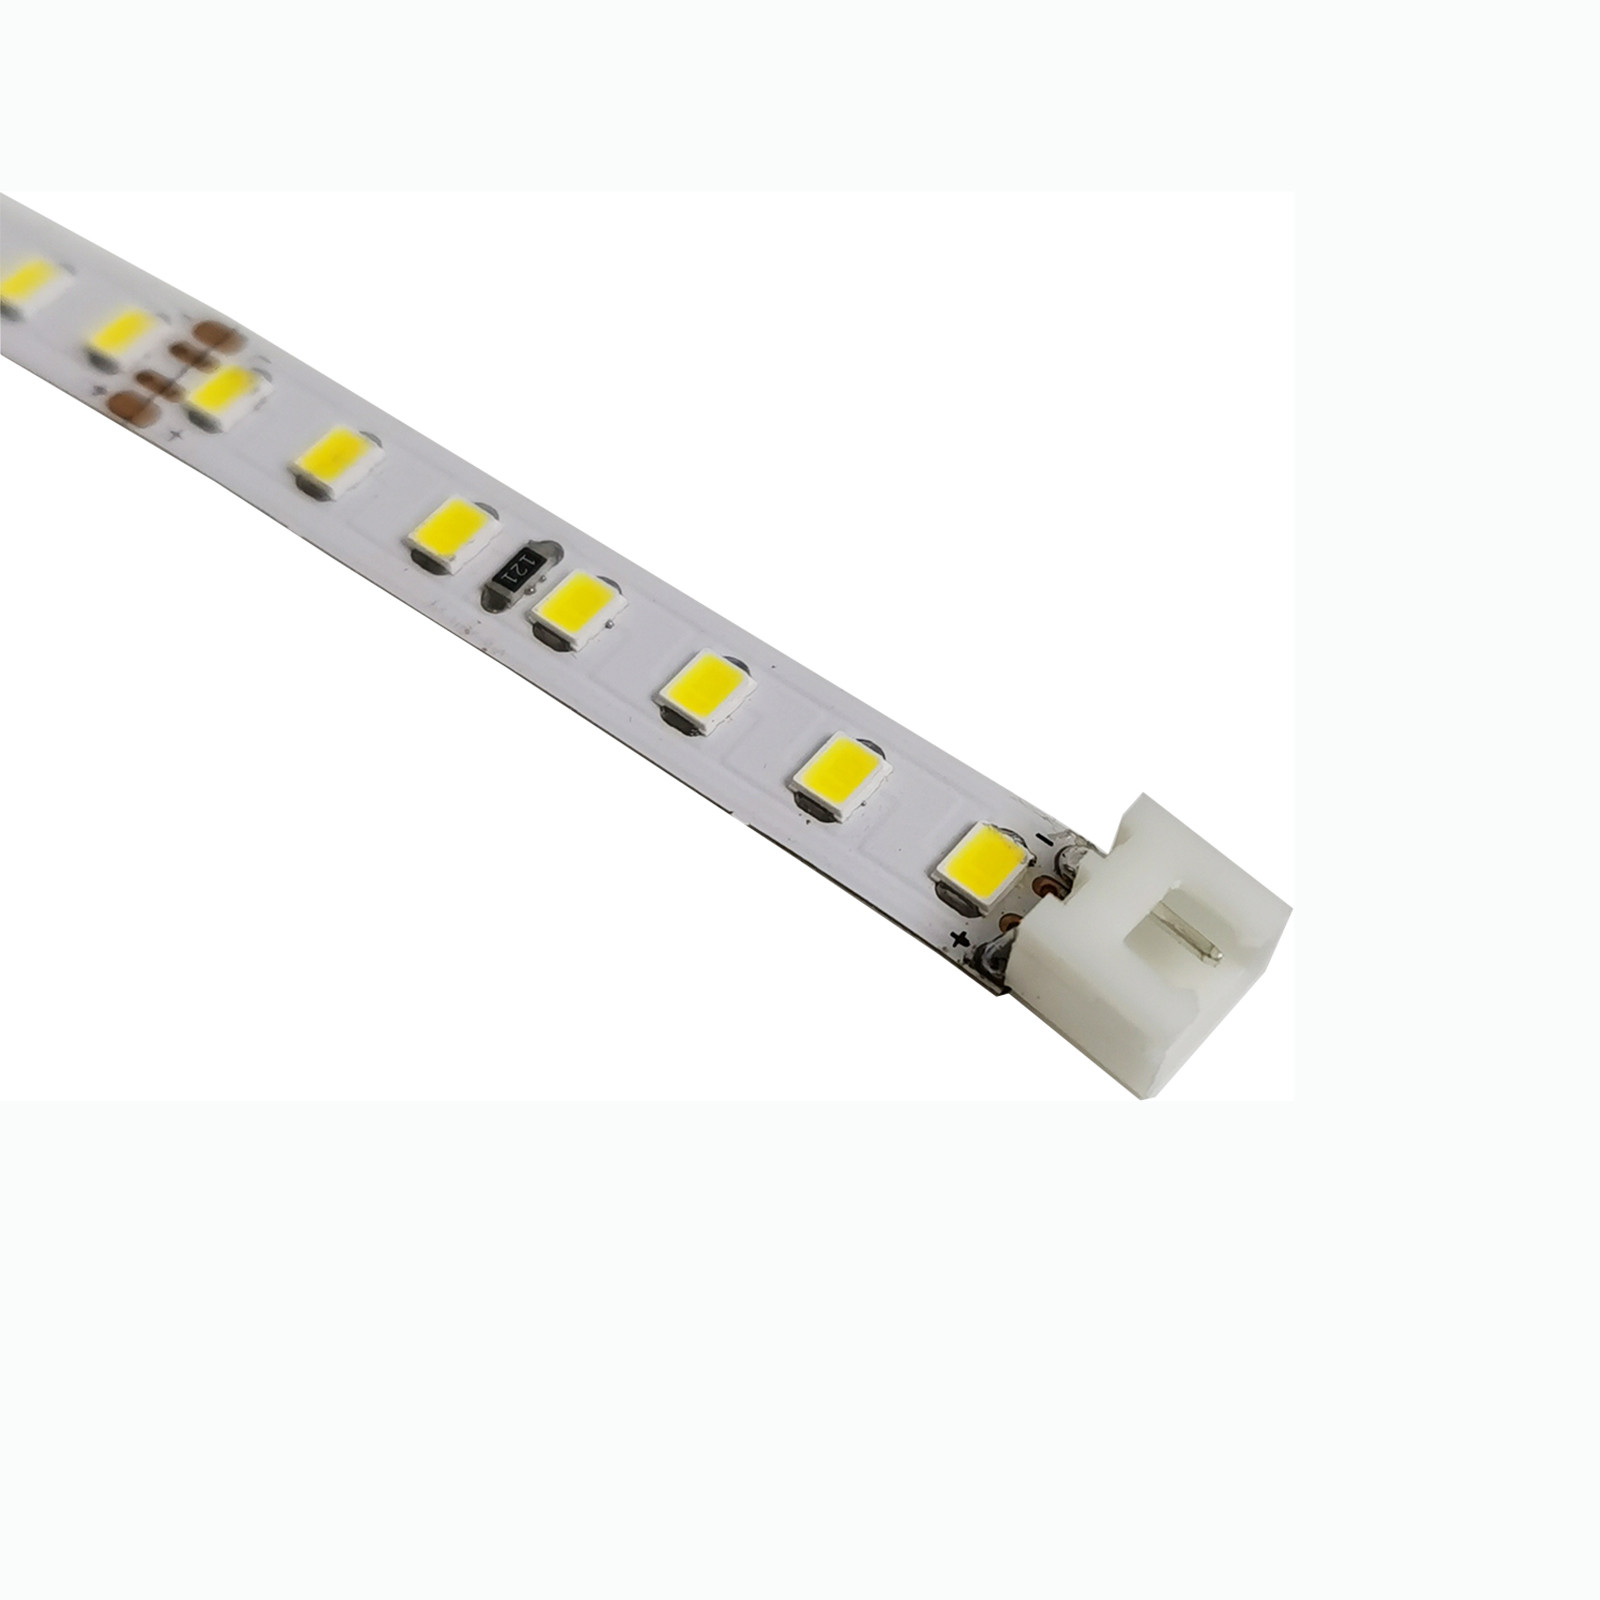 Wir löten XH2.54 2Polig Steckerbuchsen an LEDs Strips für Sie